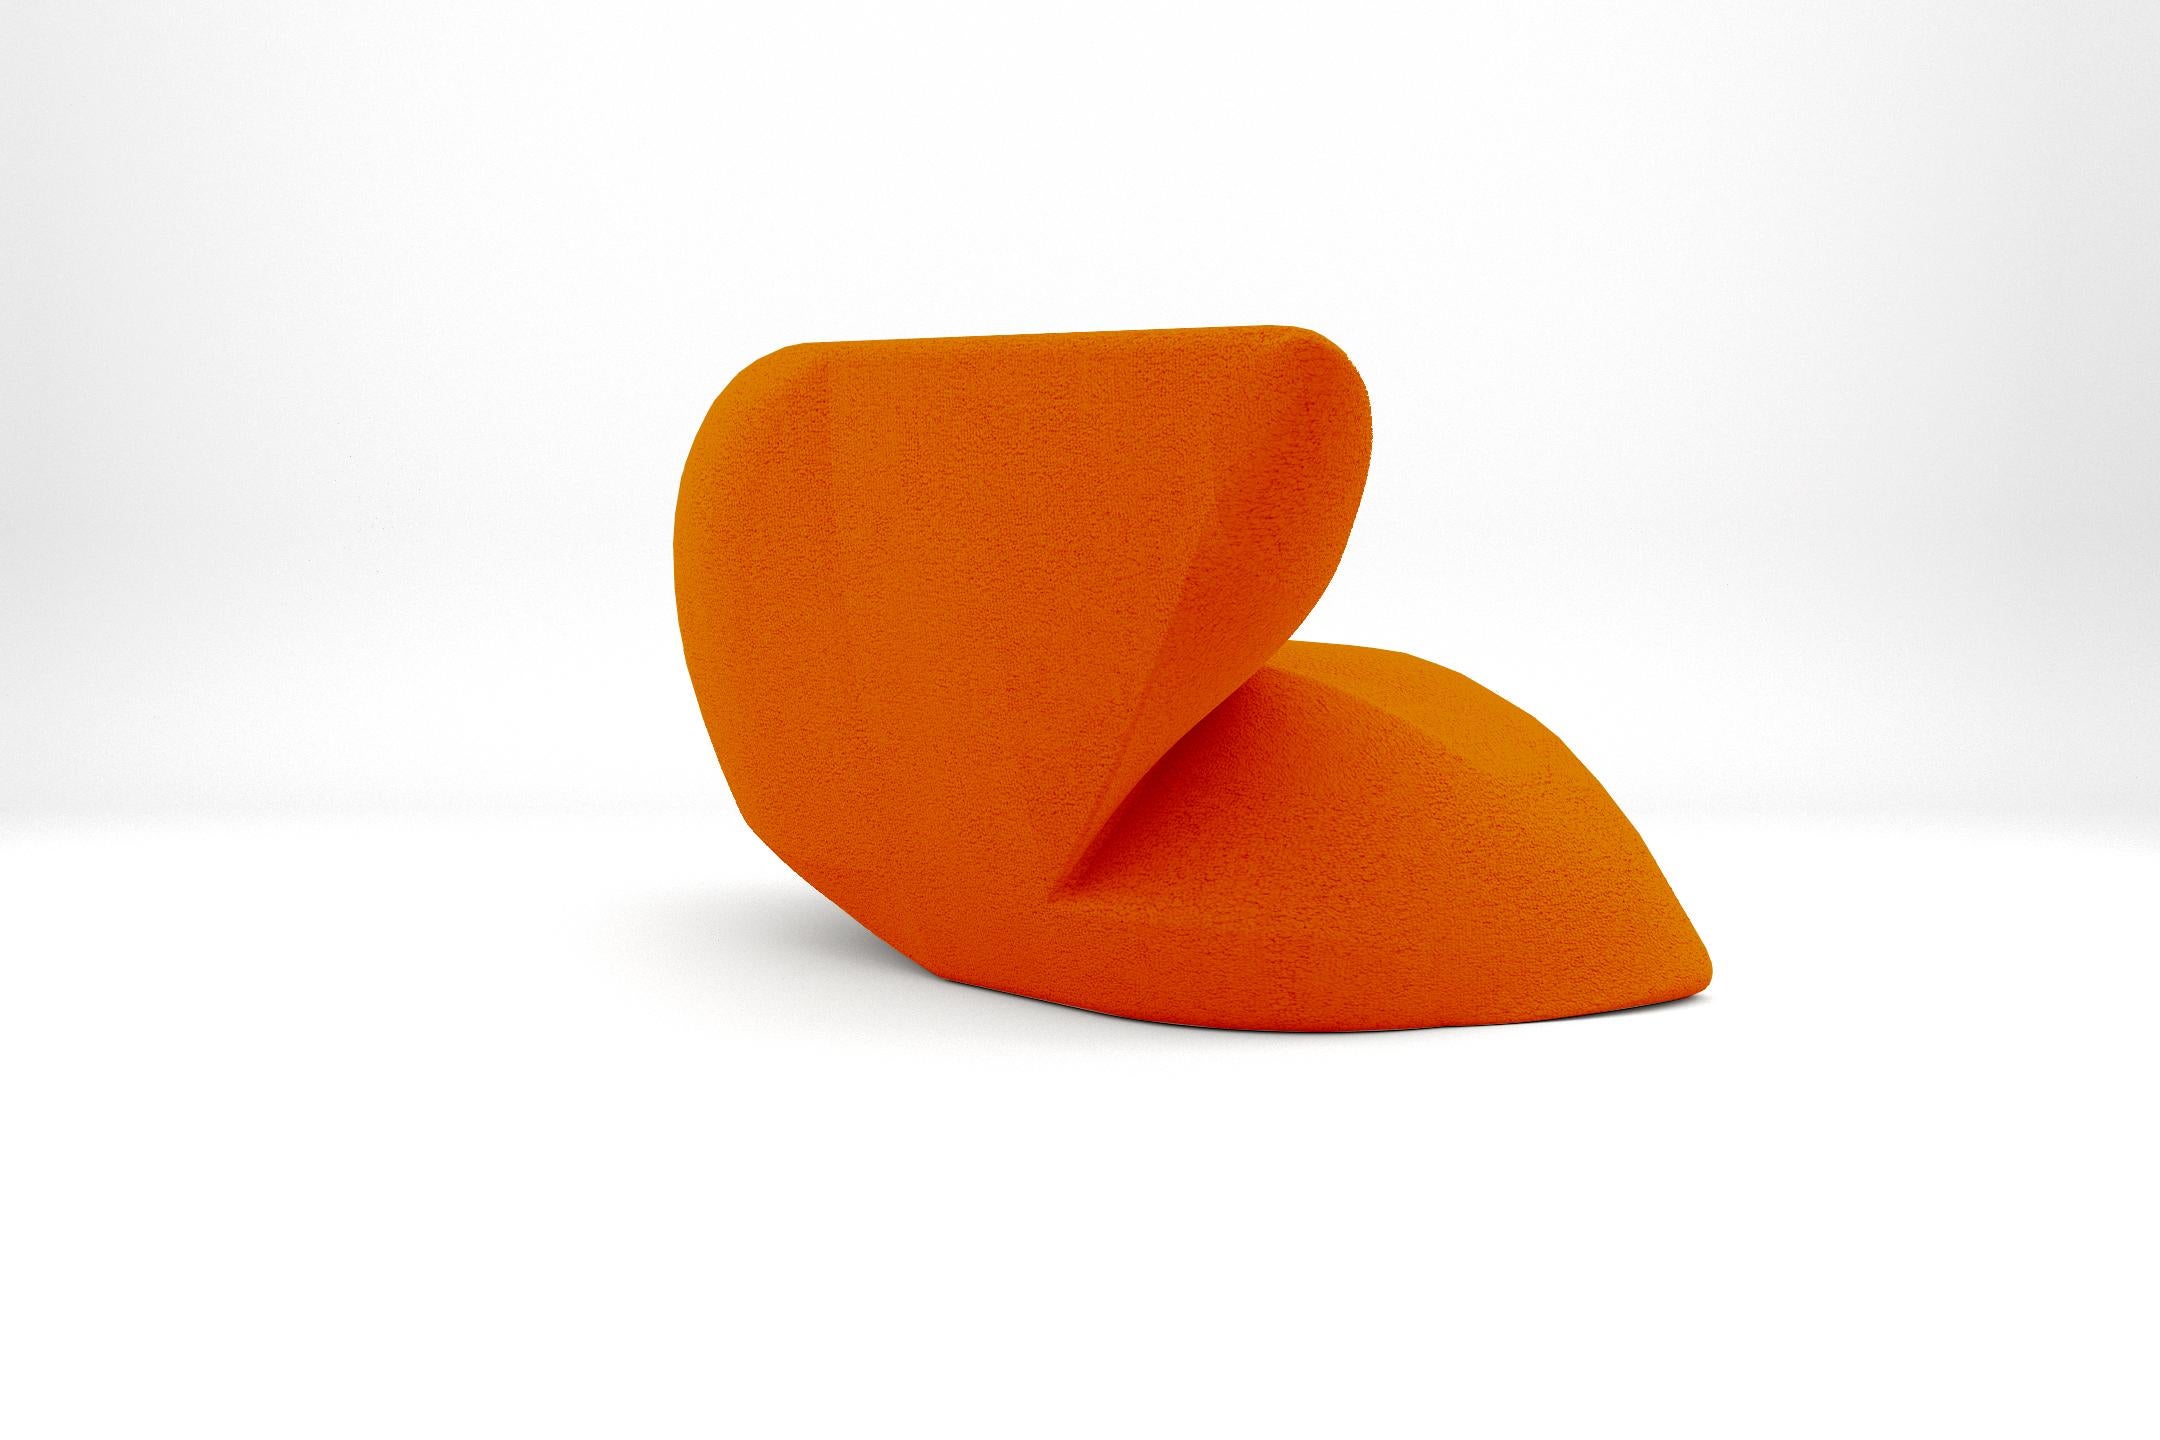 European Delta Armchair - Modern Tangerine Orange Upholstered Armchair For Sale